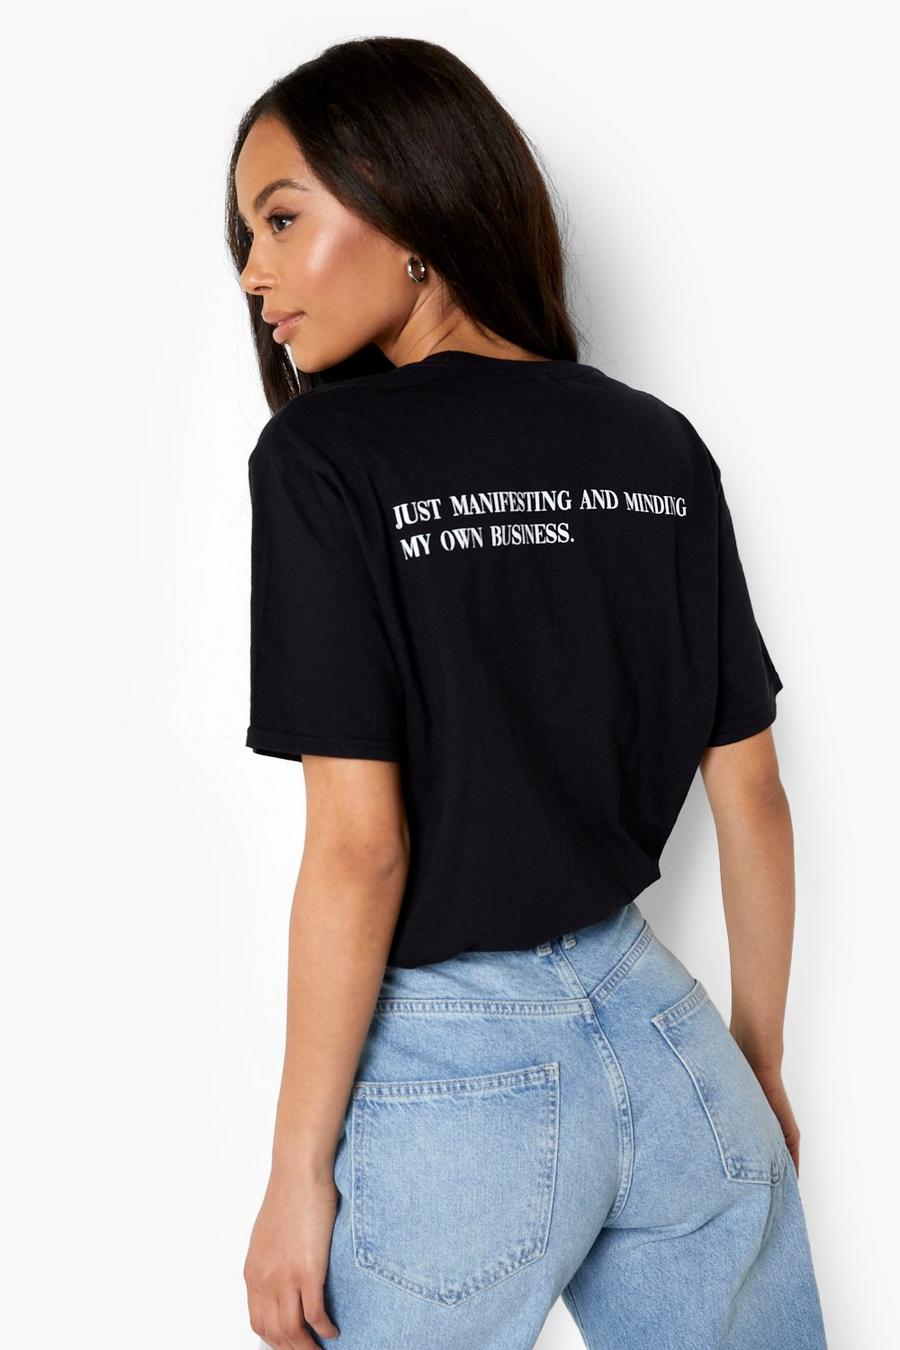 Camiseta Tall con eslogan Manifesting en la espalda